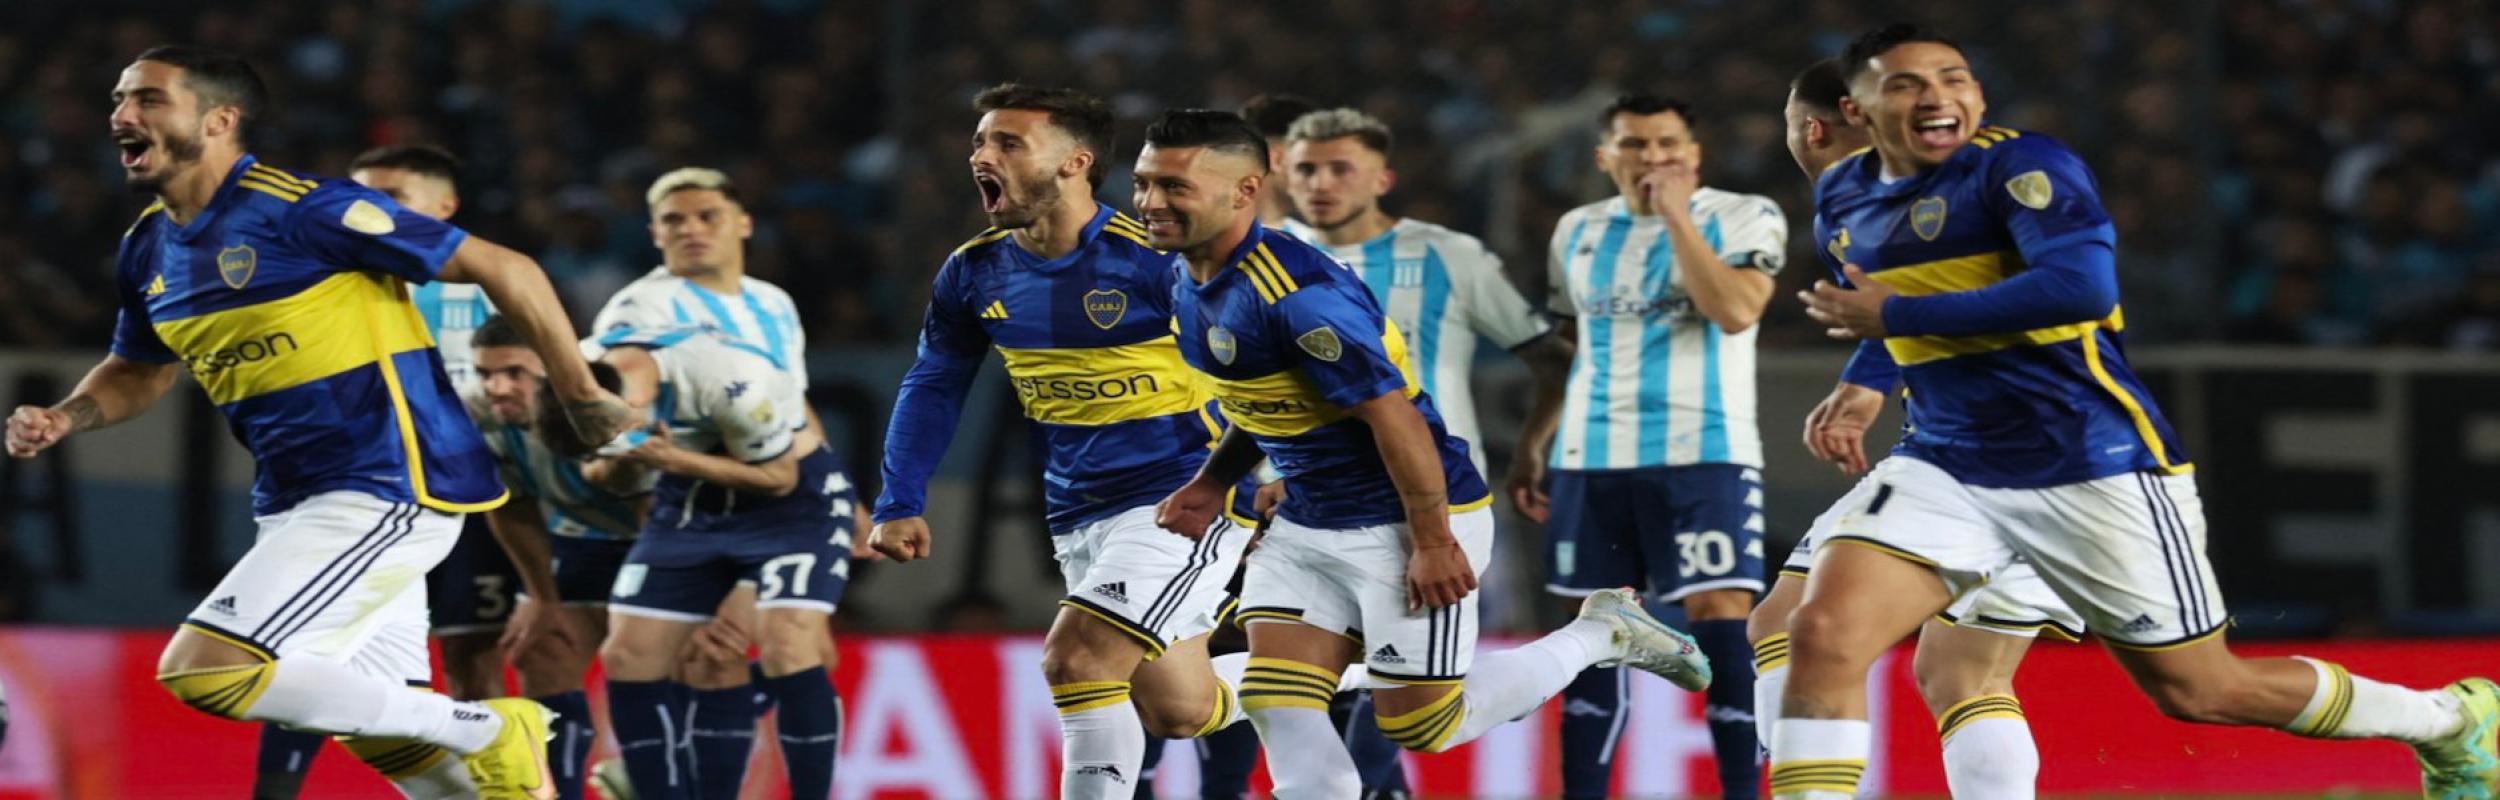 Μπόκα Τζούνιορς, Boca Juniors